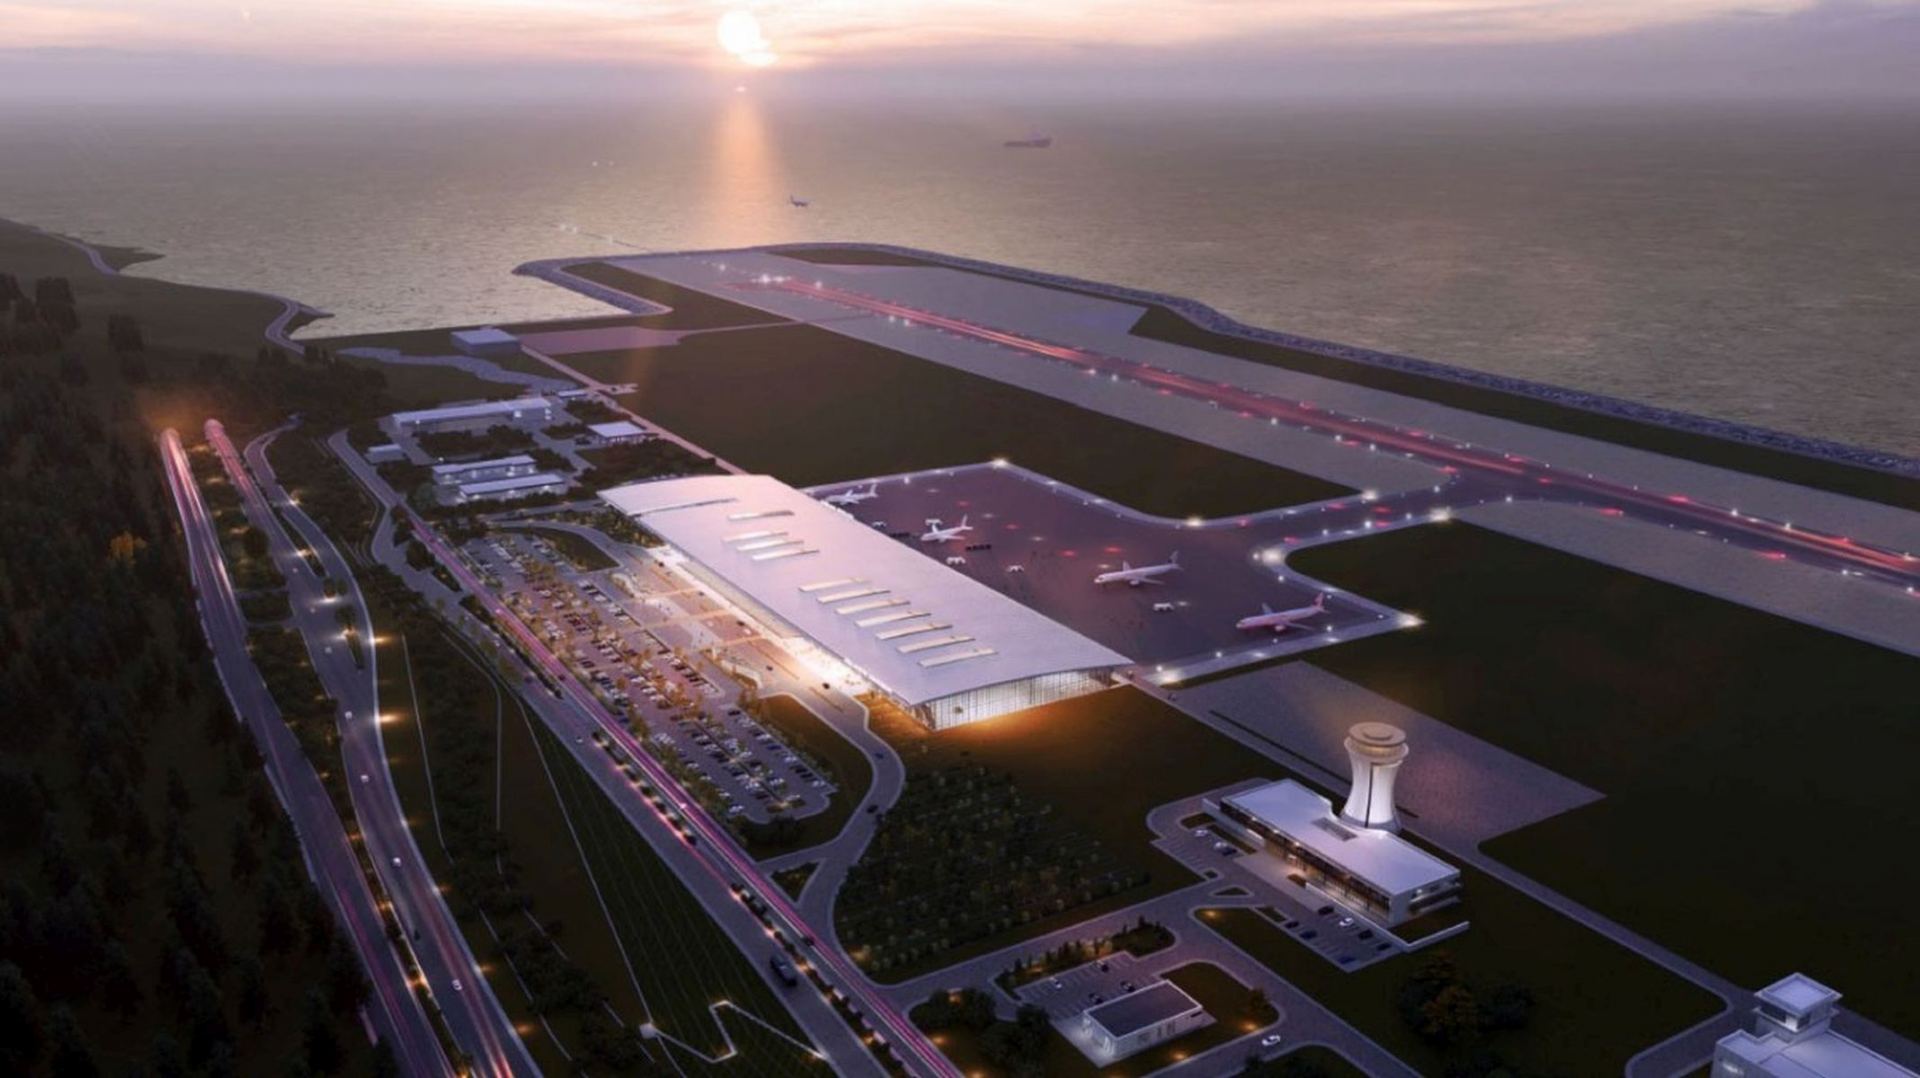 Участие Президента Ильхама Алиева в открытии аэропорта Ризе-Артвин является очень важным событием